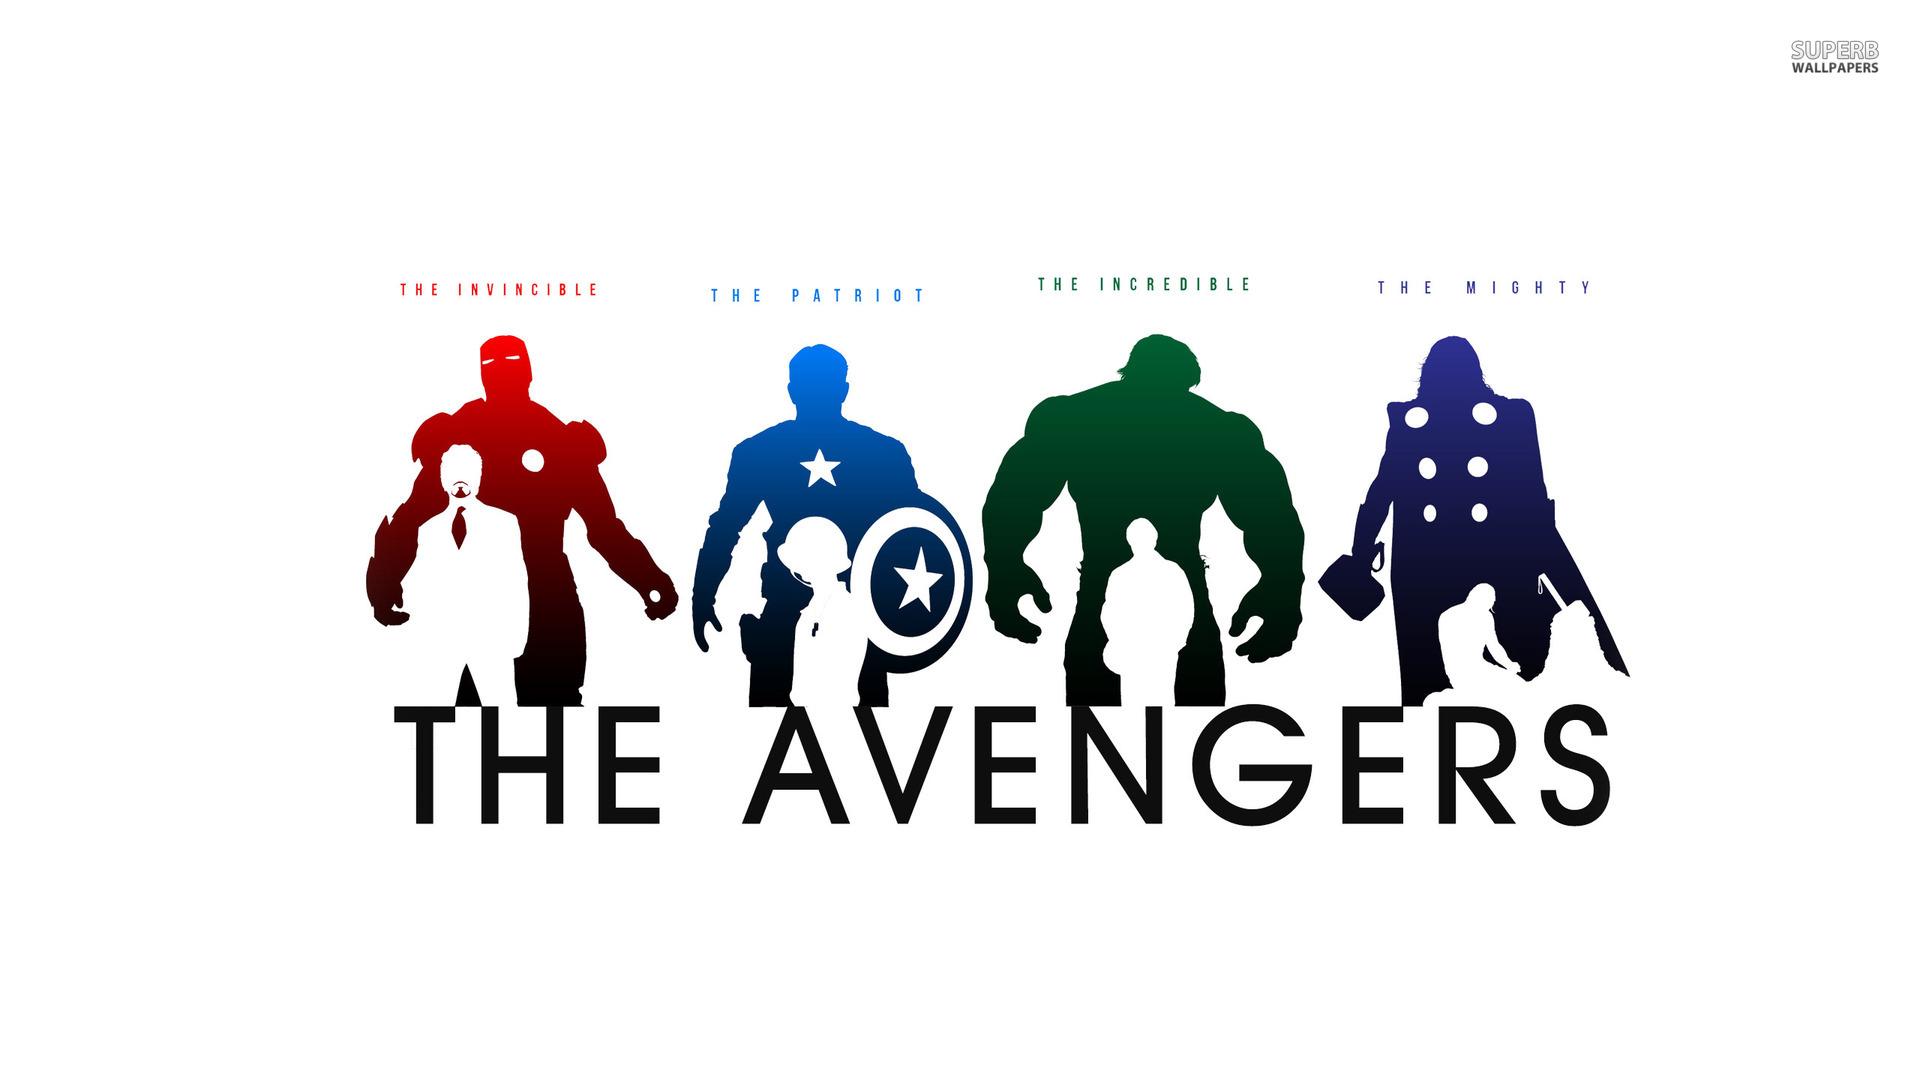 The Avengers PC Wallpaper. The Avengers